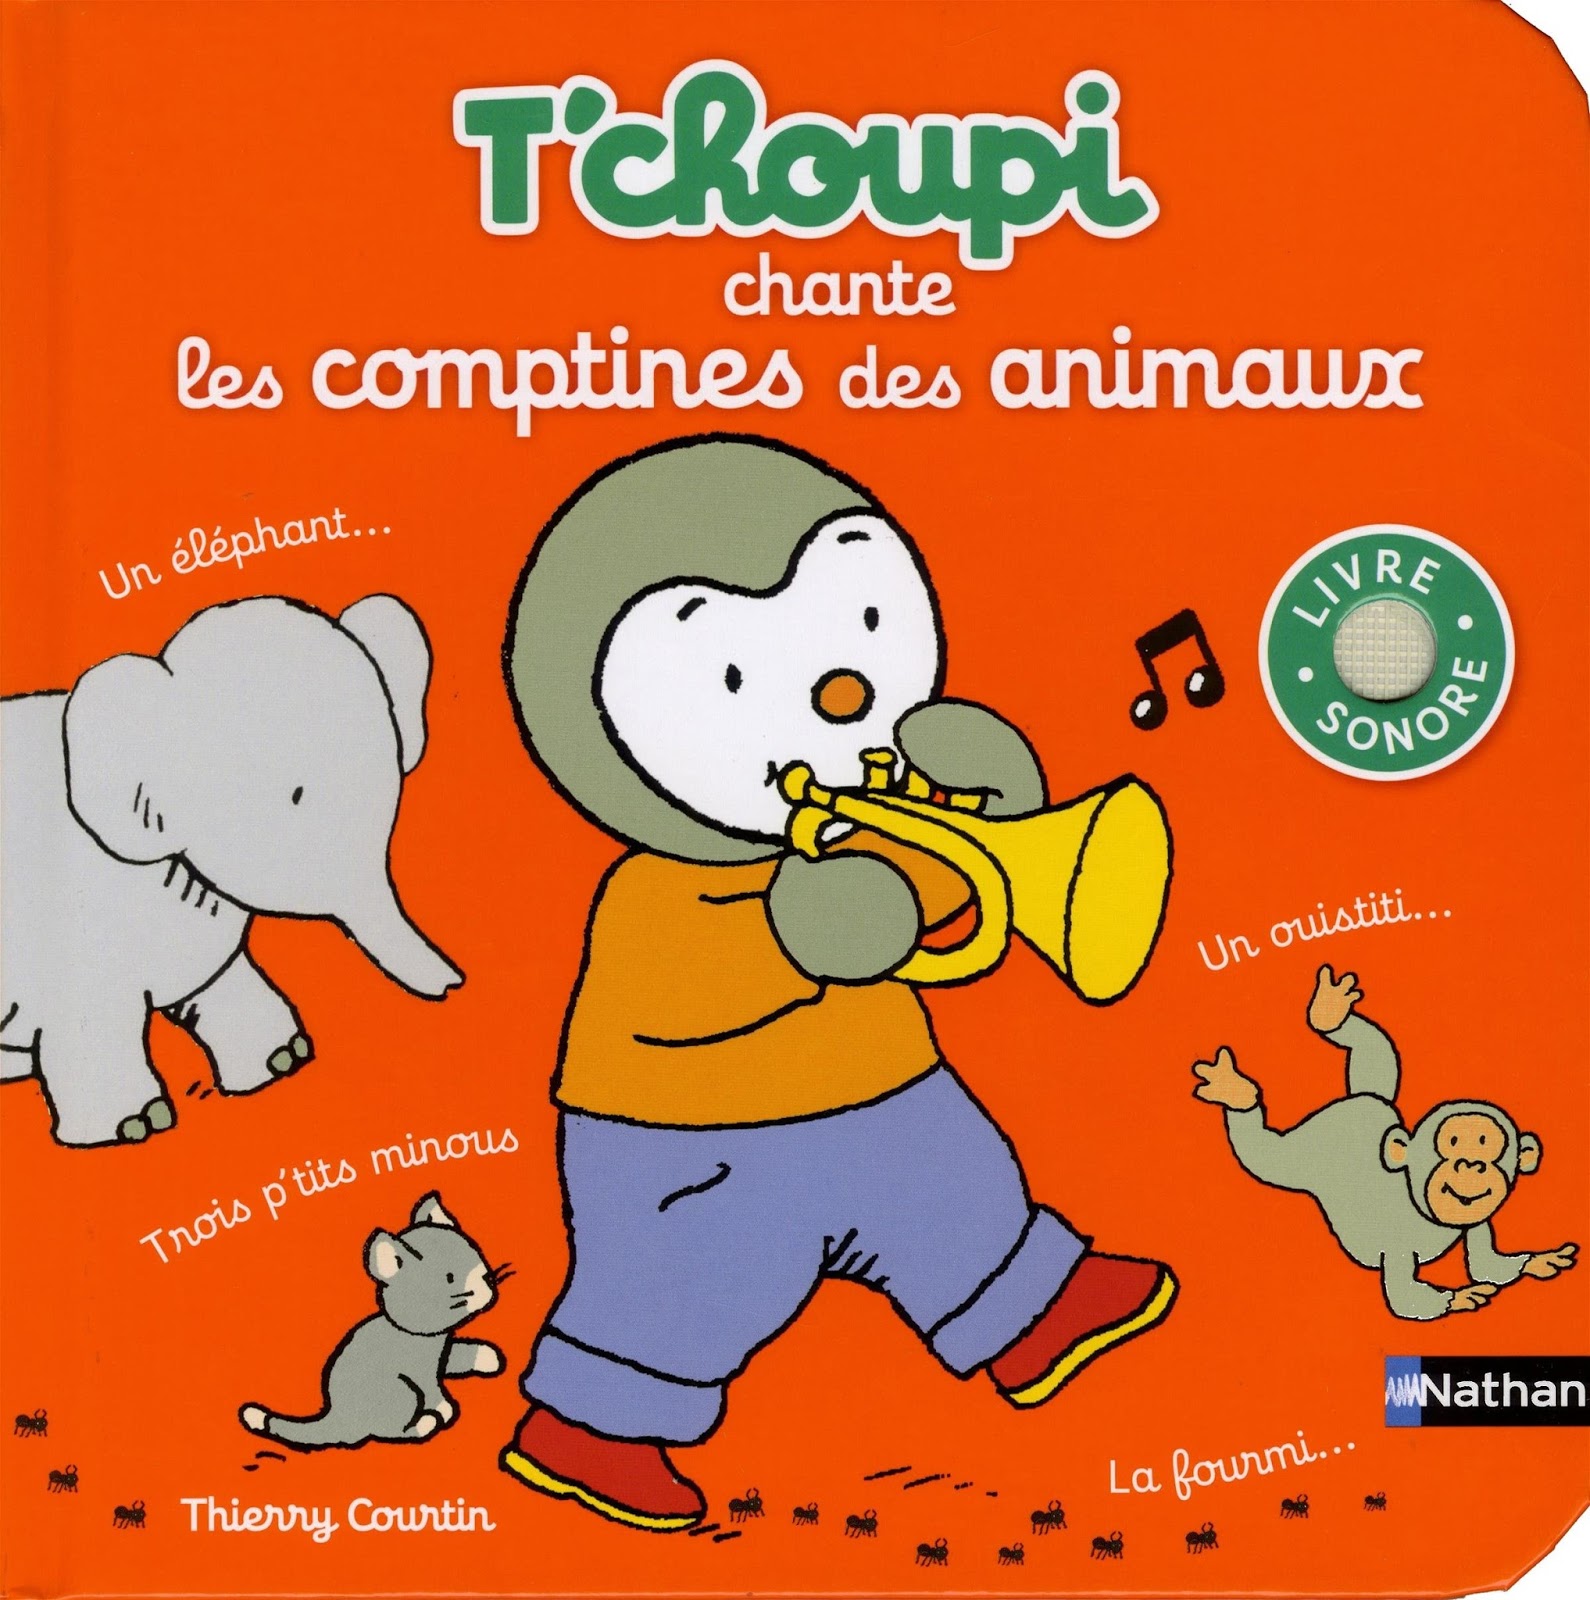 Voici enfin 5 ptines sur les animaux   écouter et   chanter avec T choupi Trois P tits minous un éléphant qui se balan§ait Petit escargot